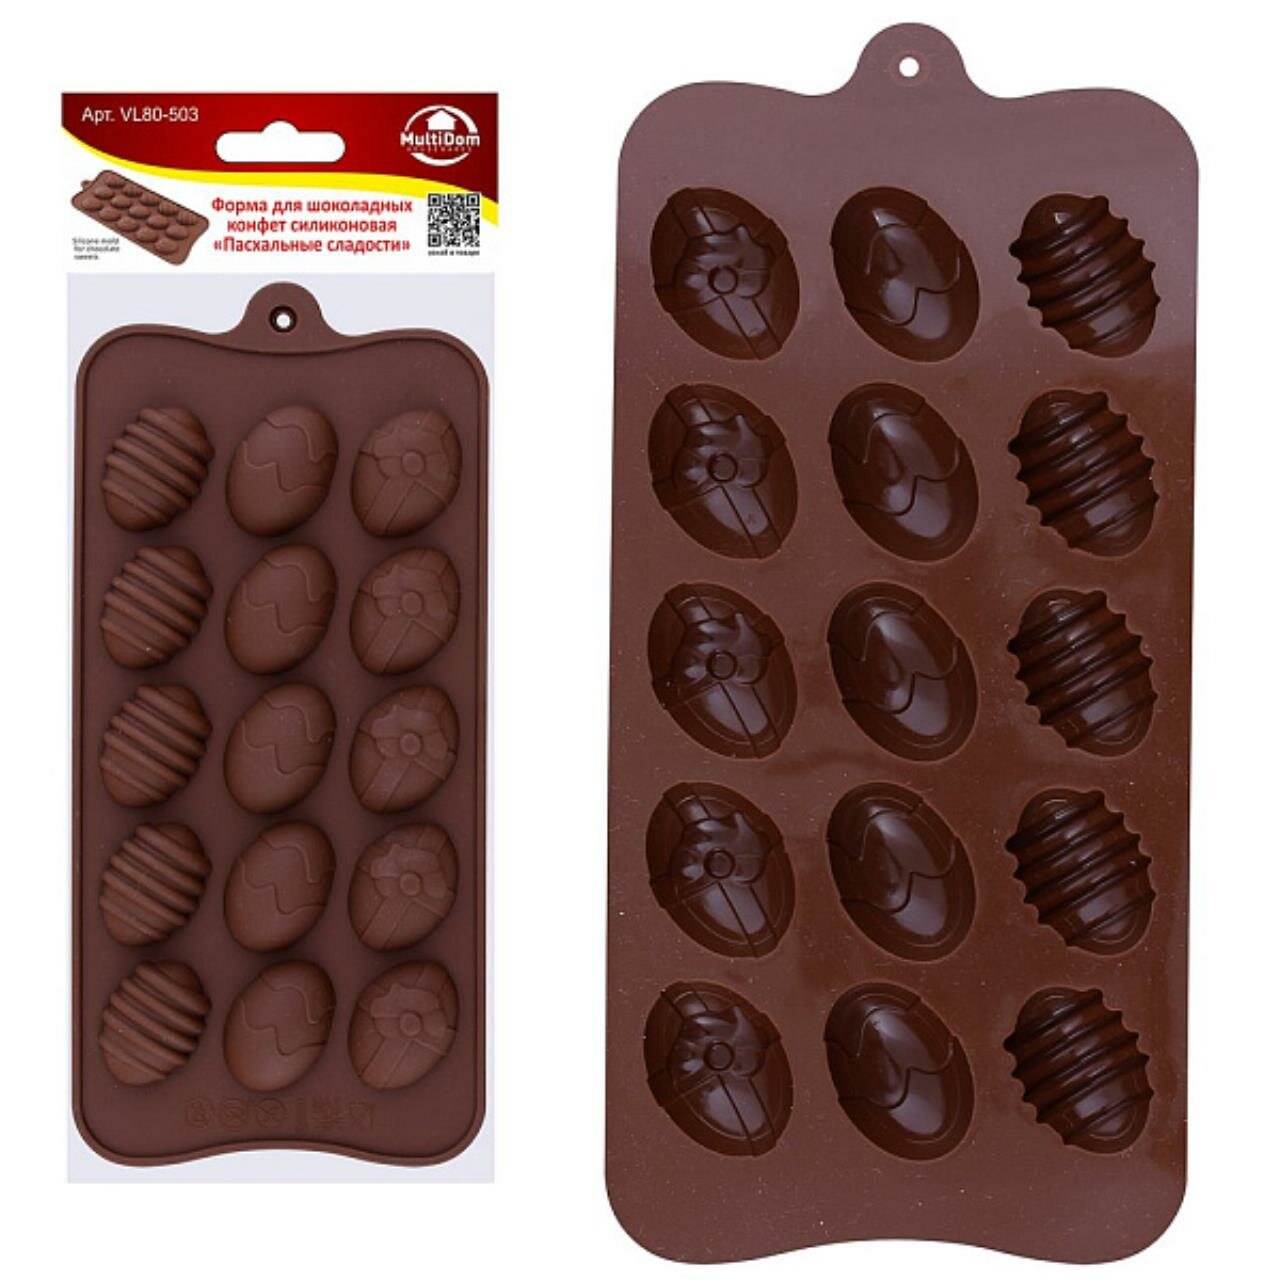 Форма для шоколадных конфет силиконовая "Пасхальные сладости" Размер 21х9,5х1,3 см.